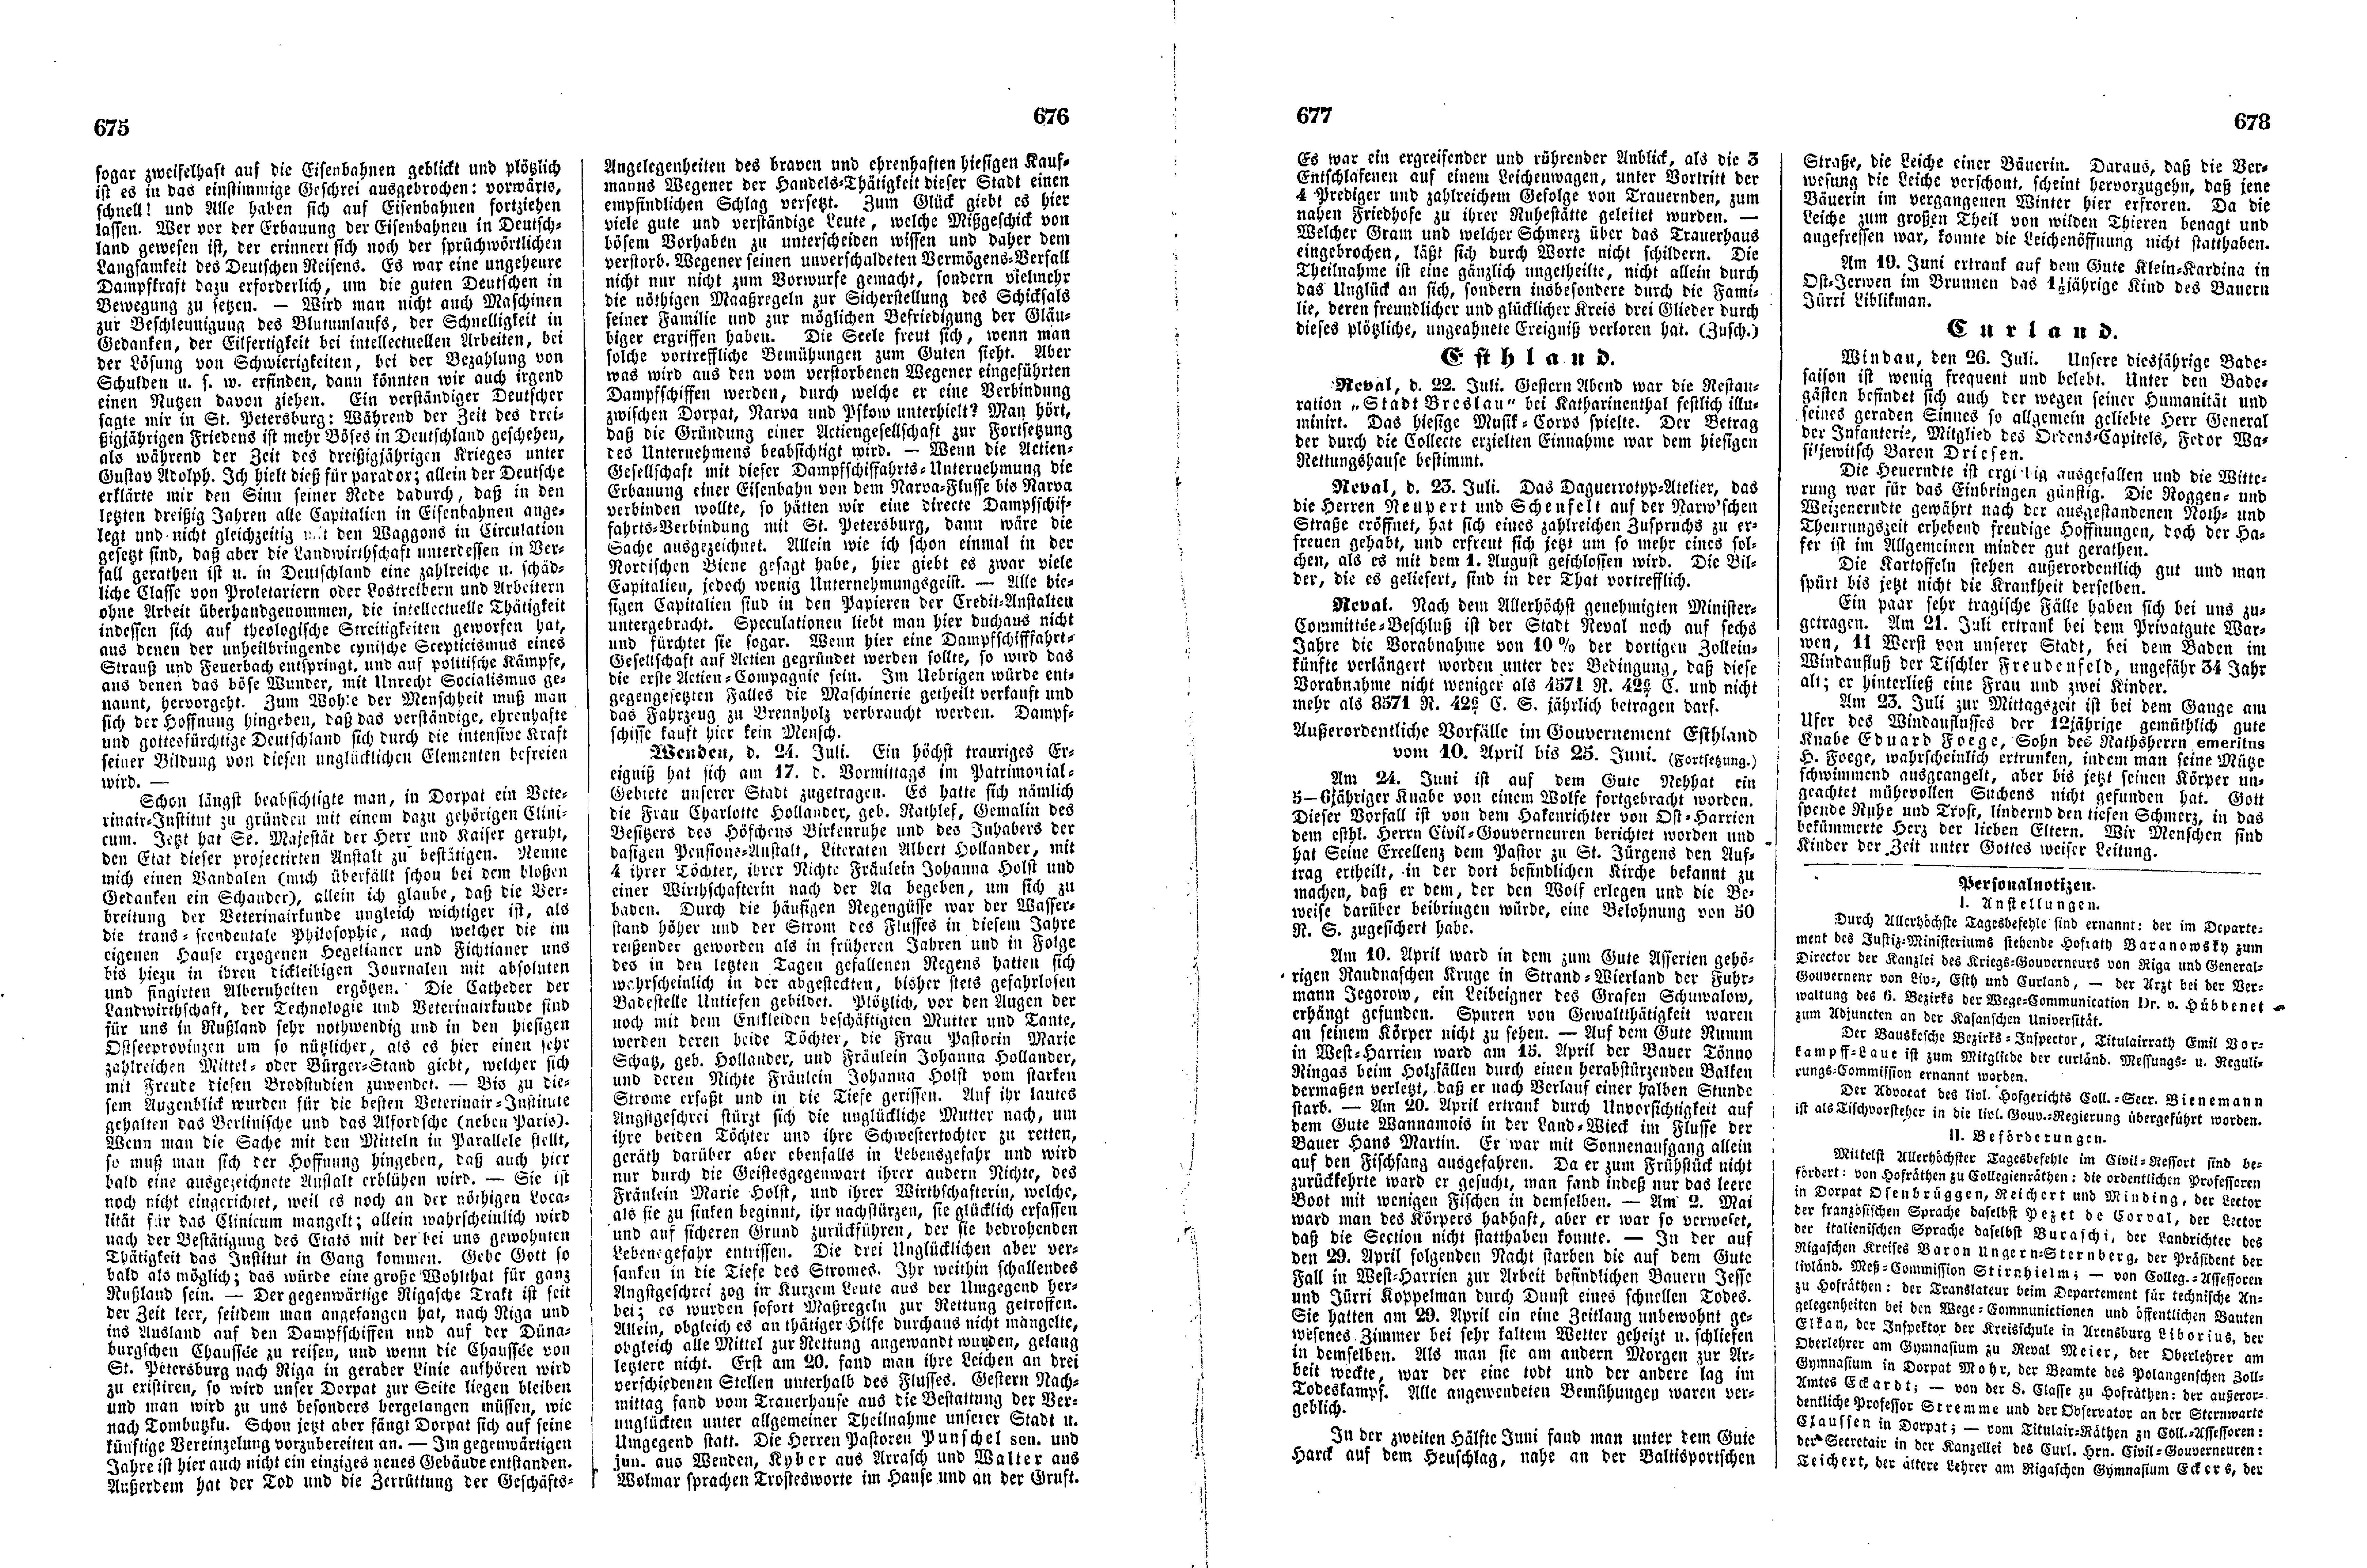 Das Inland [12] (1847) | 174. (675-678) Основной текст